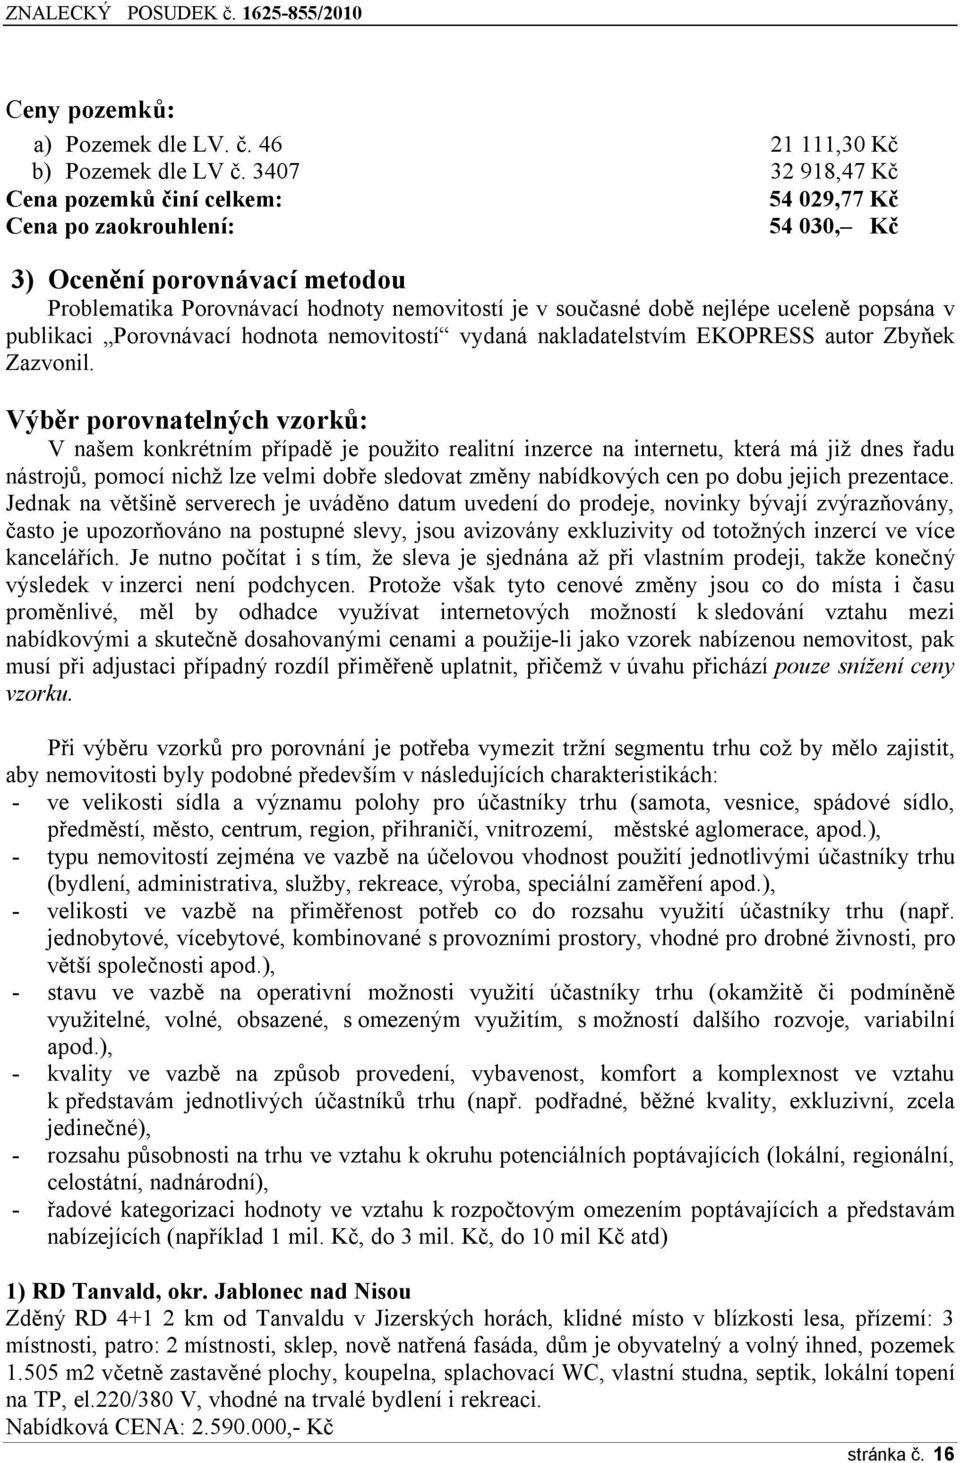 uceleně popsána v publikaci Porovnávací hodnota nemovitostí vydaná nakladatelstvím EKOPRESS autor Zbyňek Zazvonil.